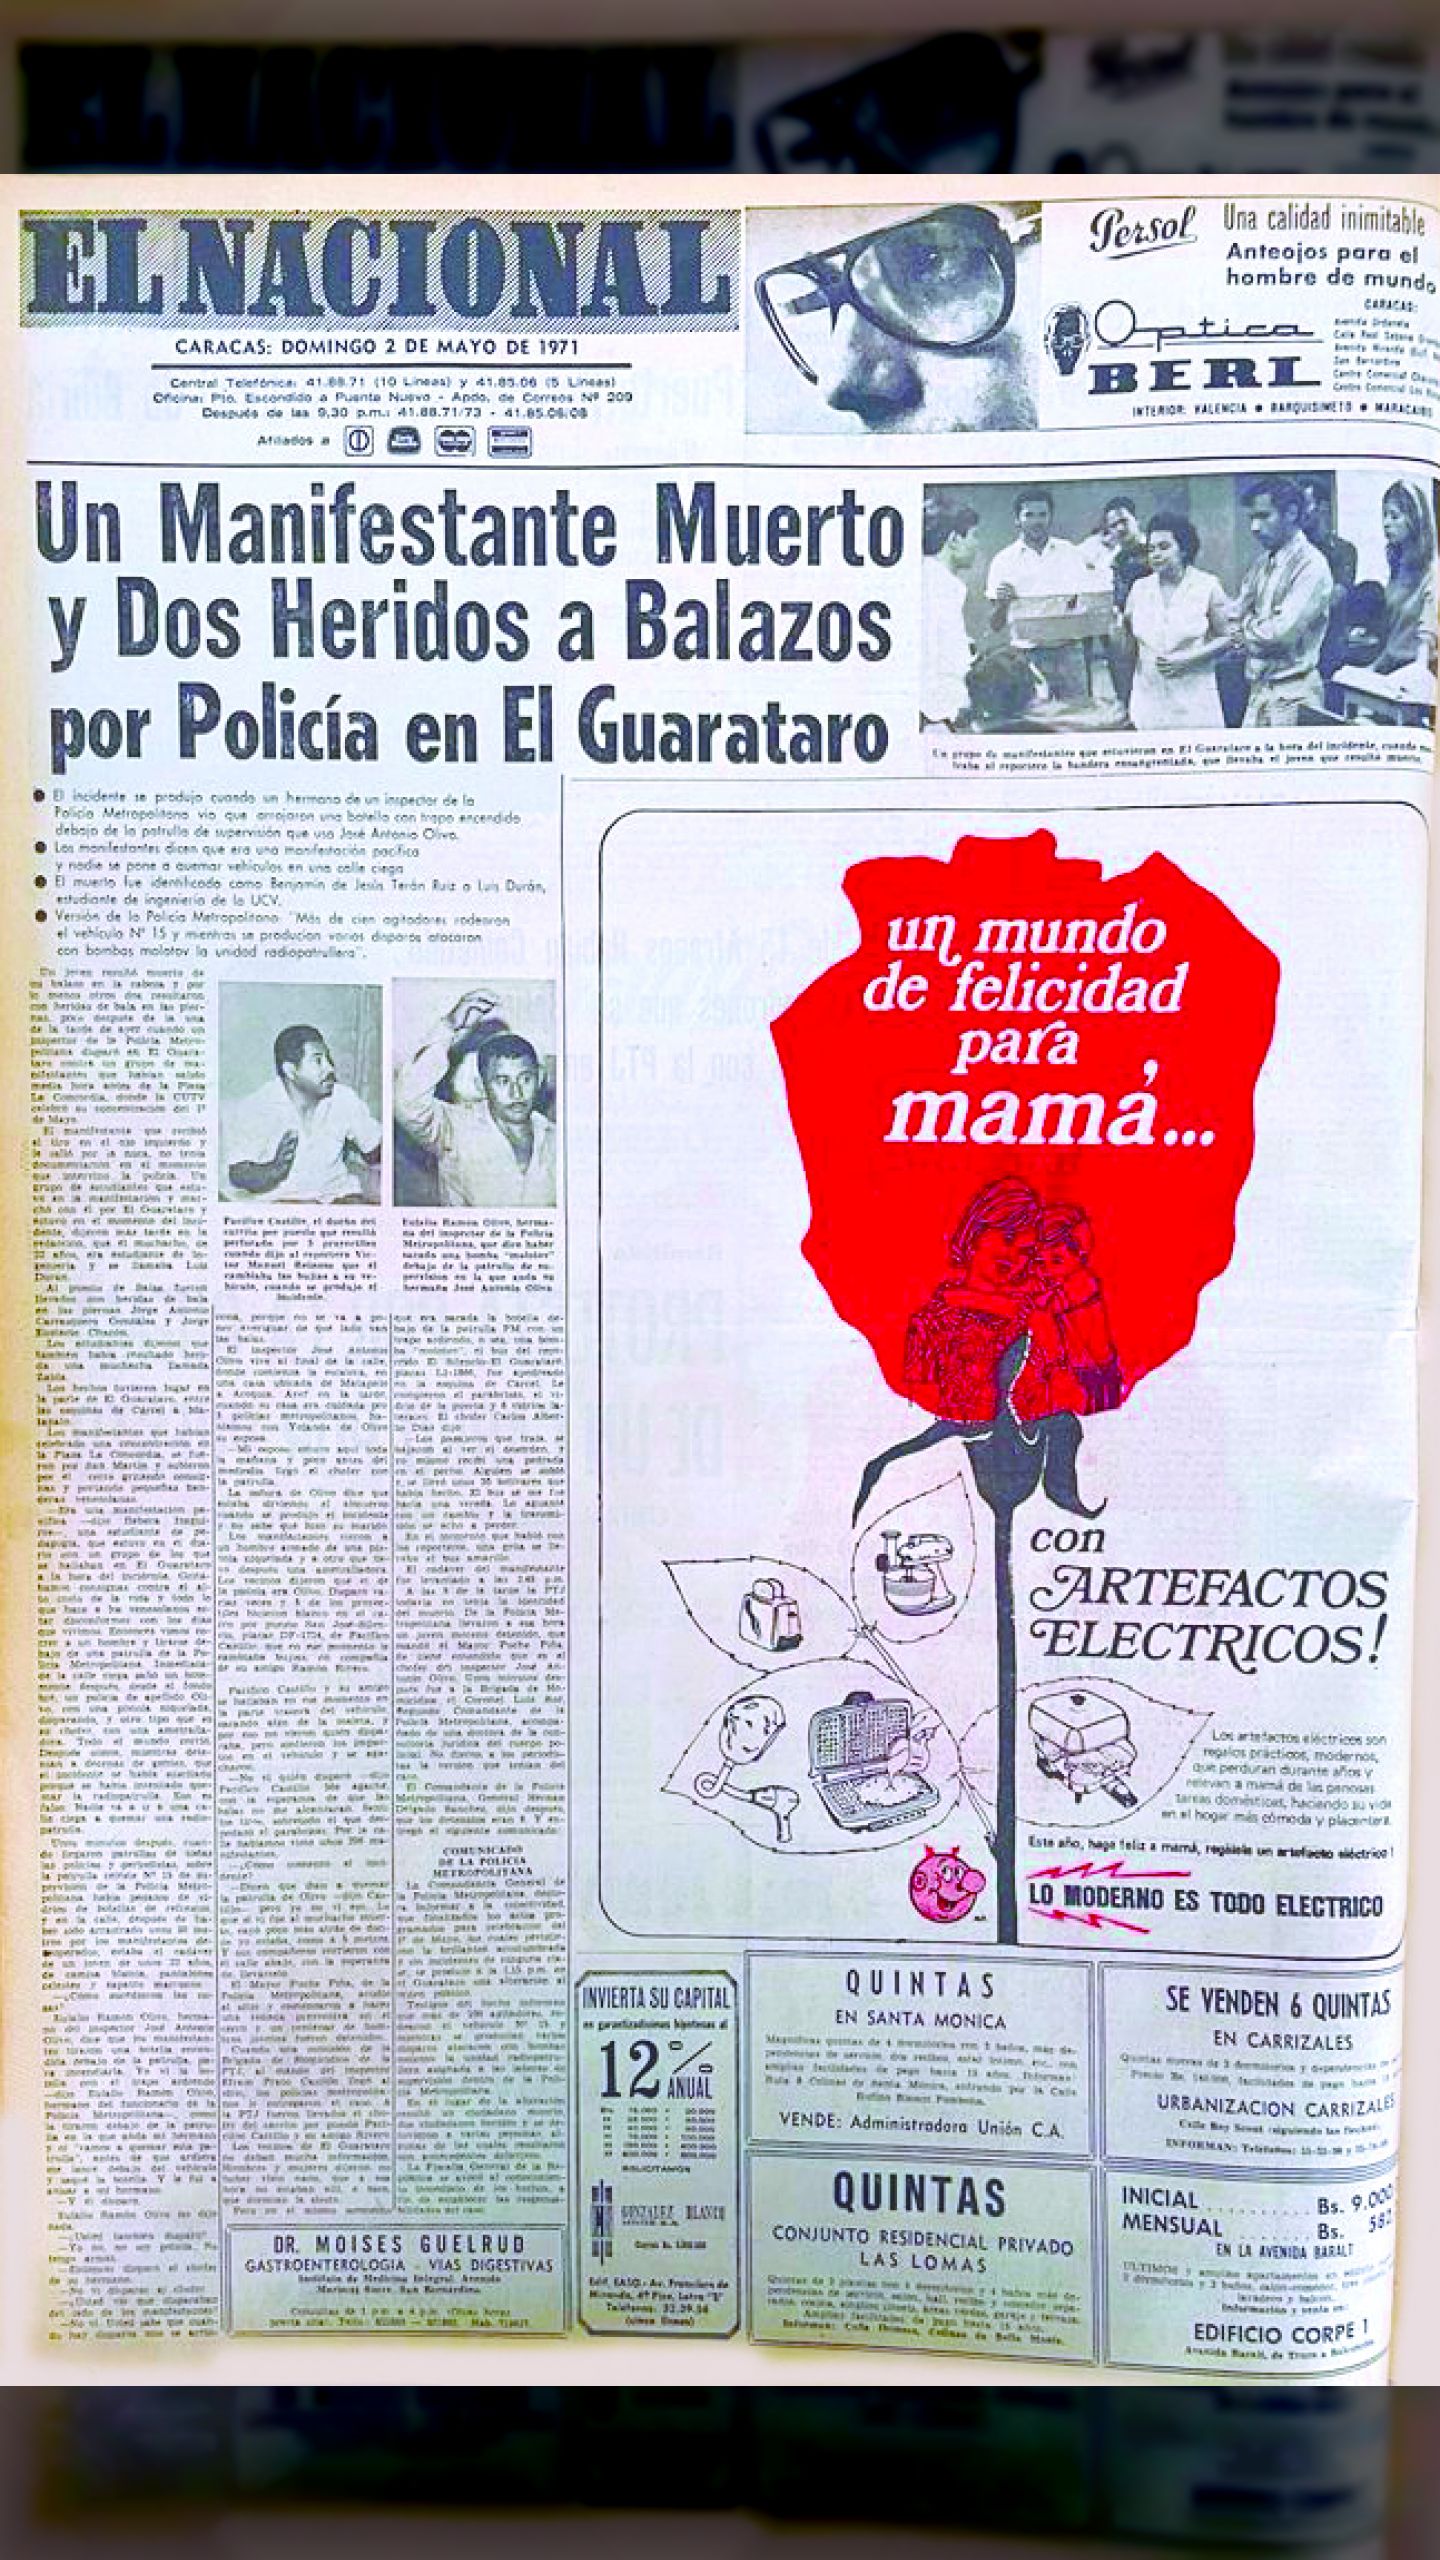 Un manifestante muerto y dos heridos a balazos por la policía en El Guarataro (El Nacional, 2 de mayo de 1971)